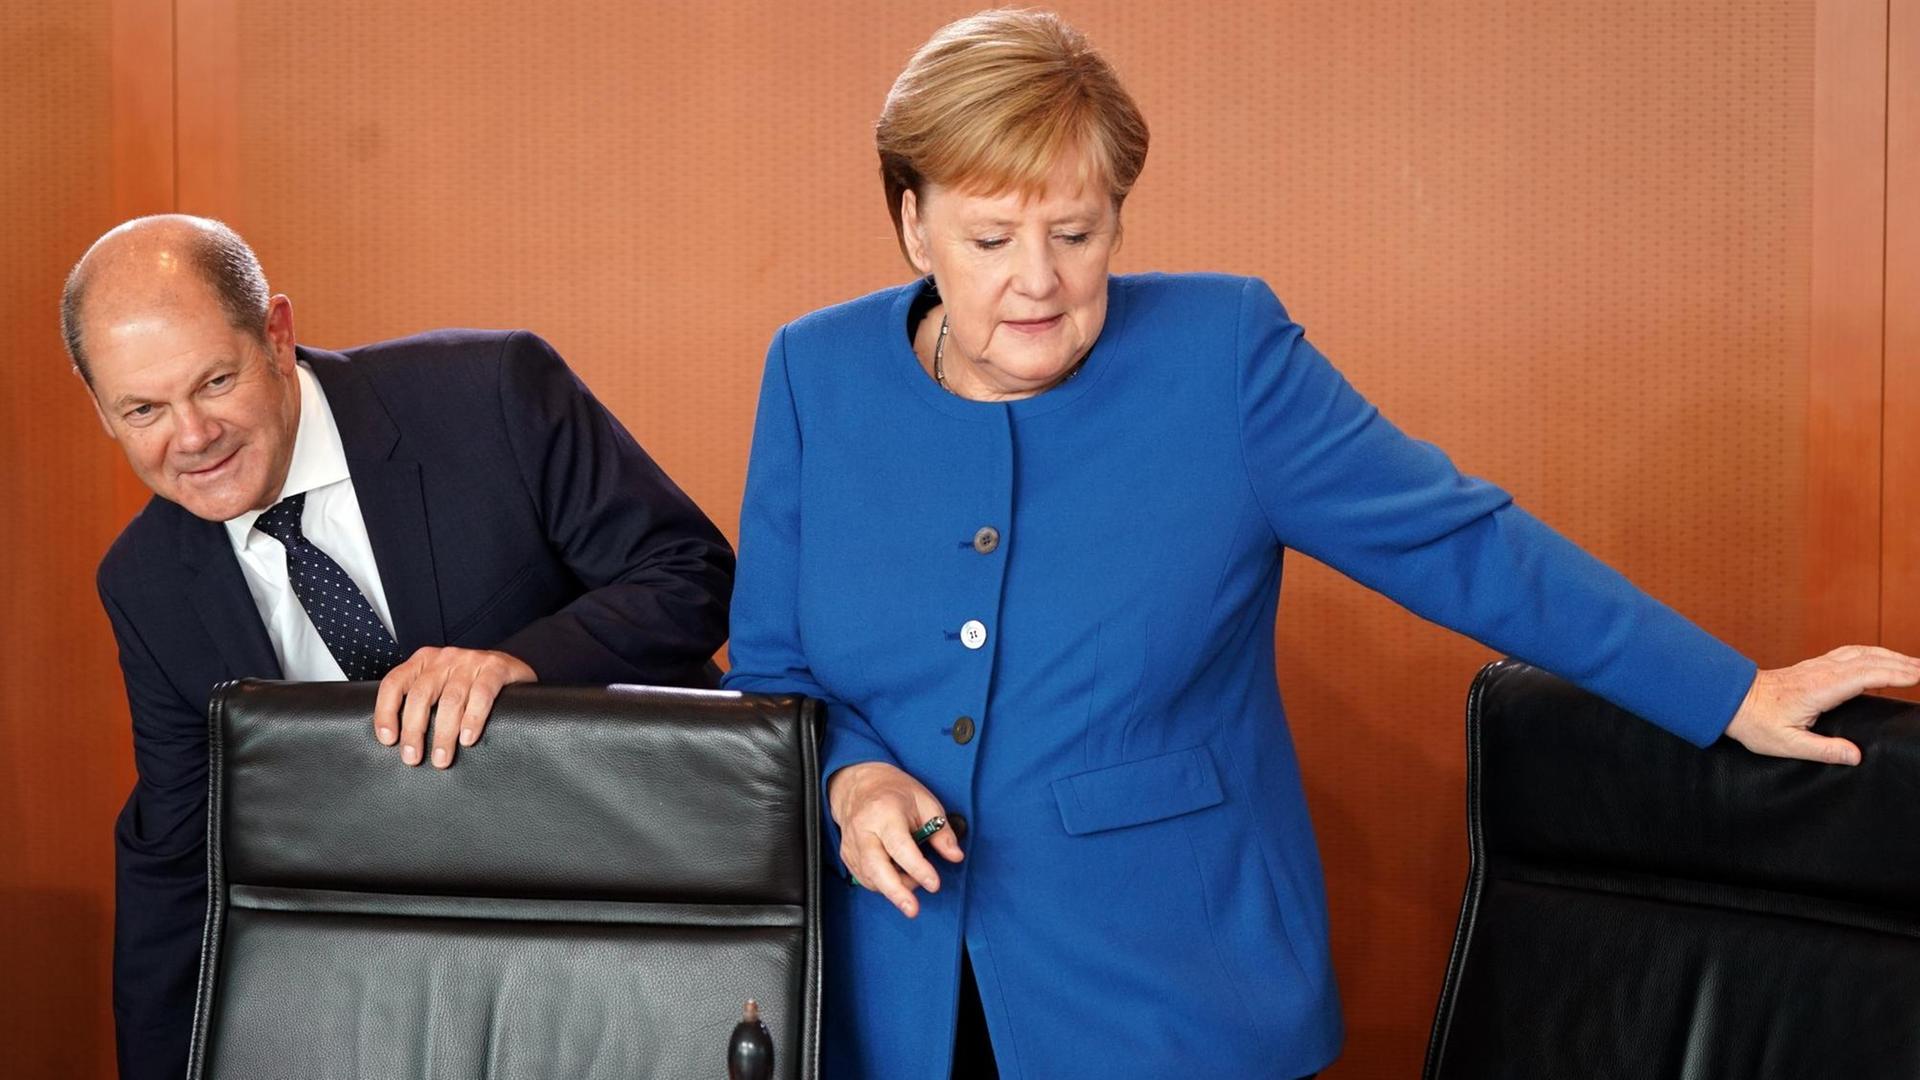 Bundeskanzlerin Angela Merkel (CDU) und Finanzminister Olaf Scholz (SPD) bei der Sitzung des Klimakabinetts der Bundesregierung.